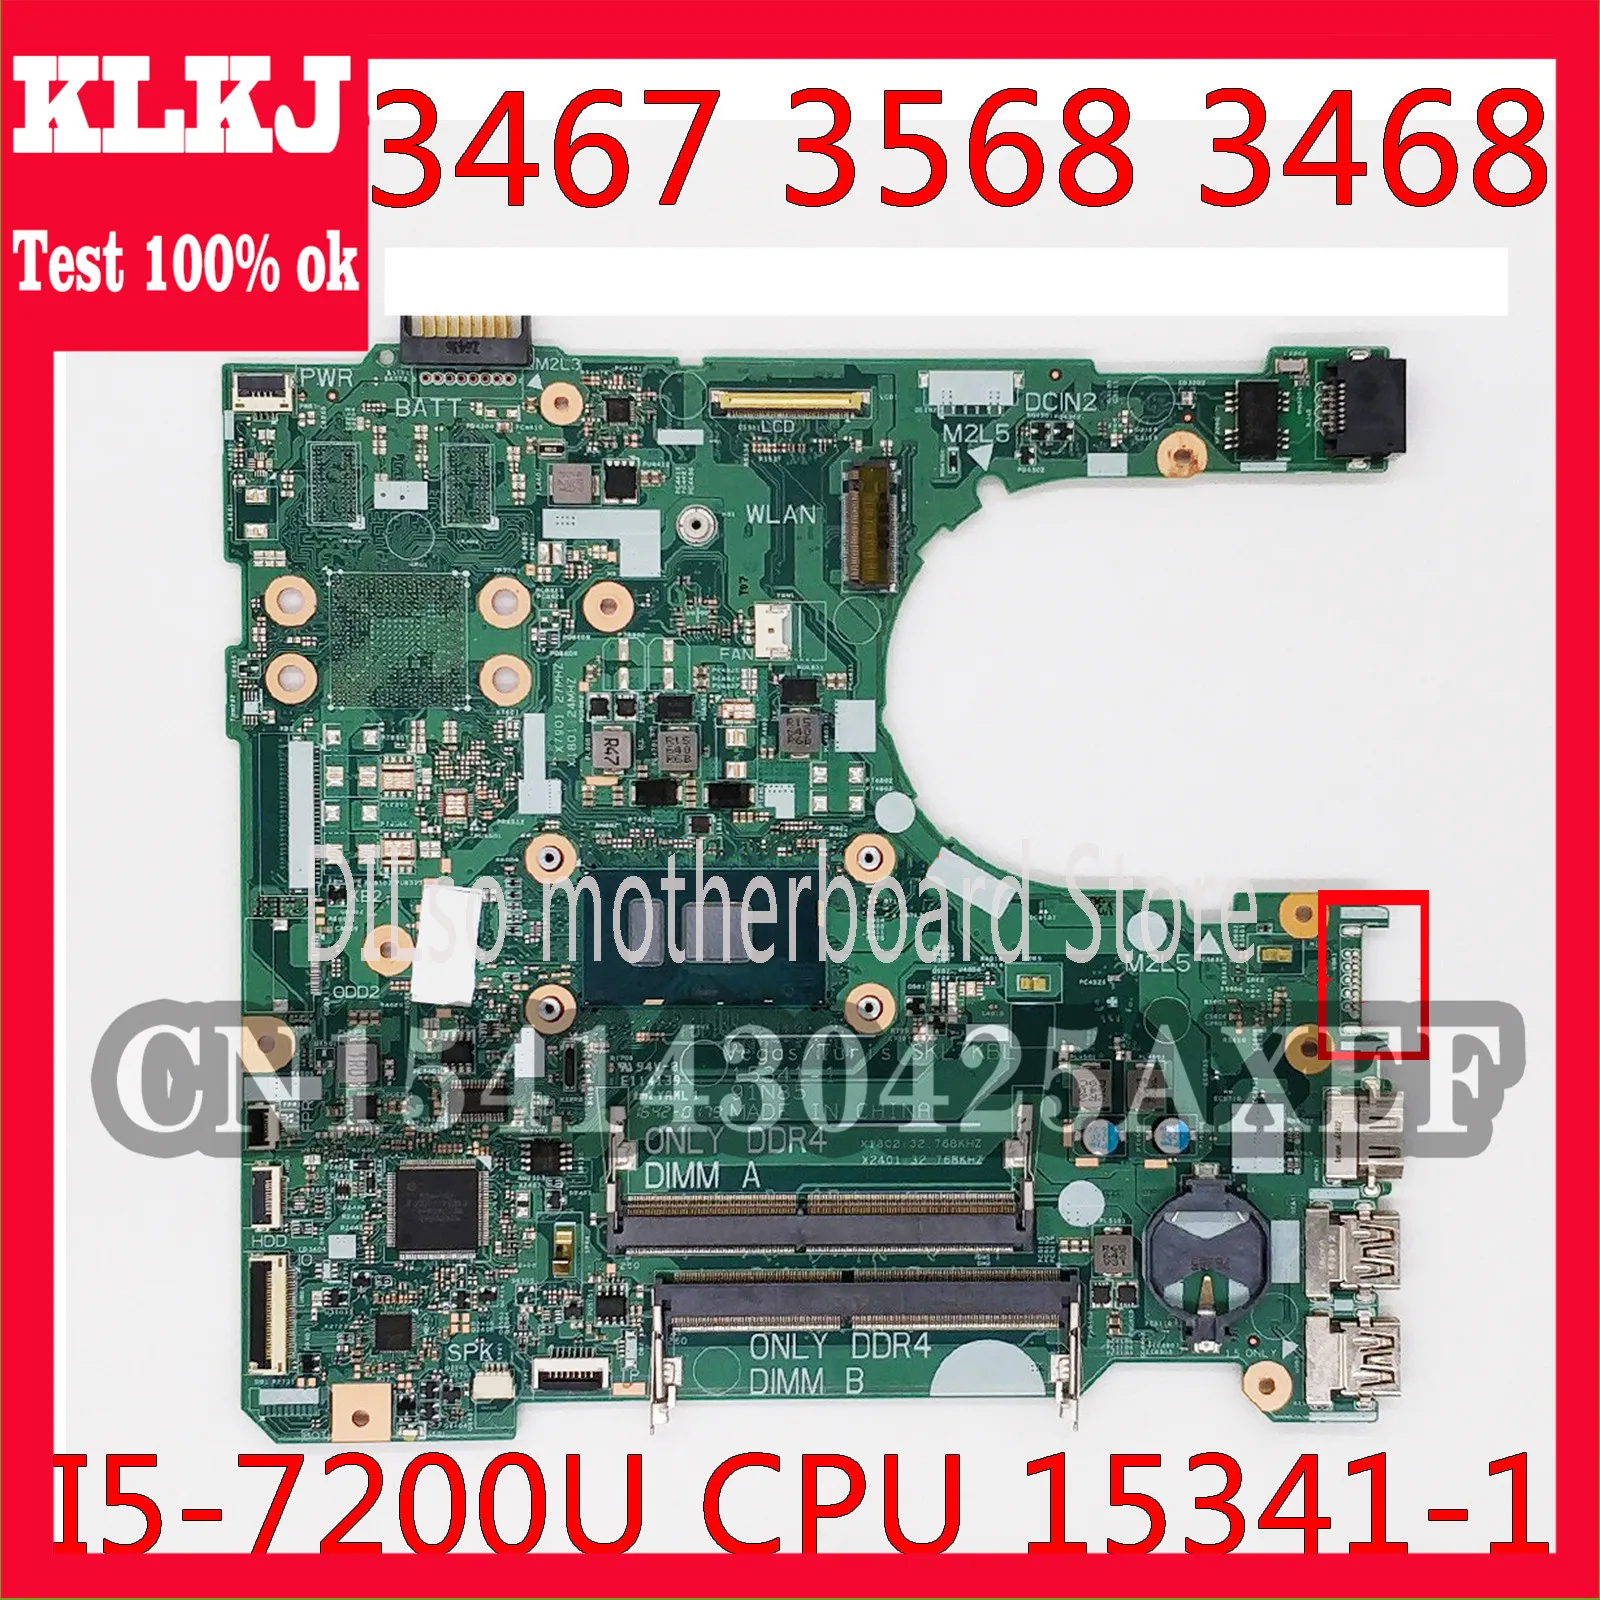 

KLKJ CN-0D71DF 0D71DF Mainboard For DELL Inspiron 15 3567 3467 3568 3468 Laptop Motherboard I5-7200U 15341-1 Work 100%